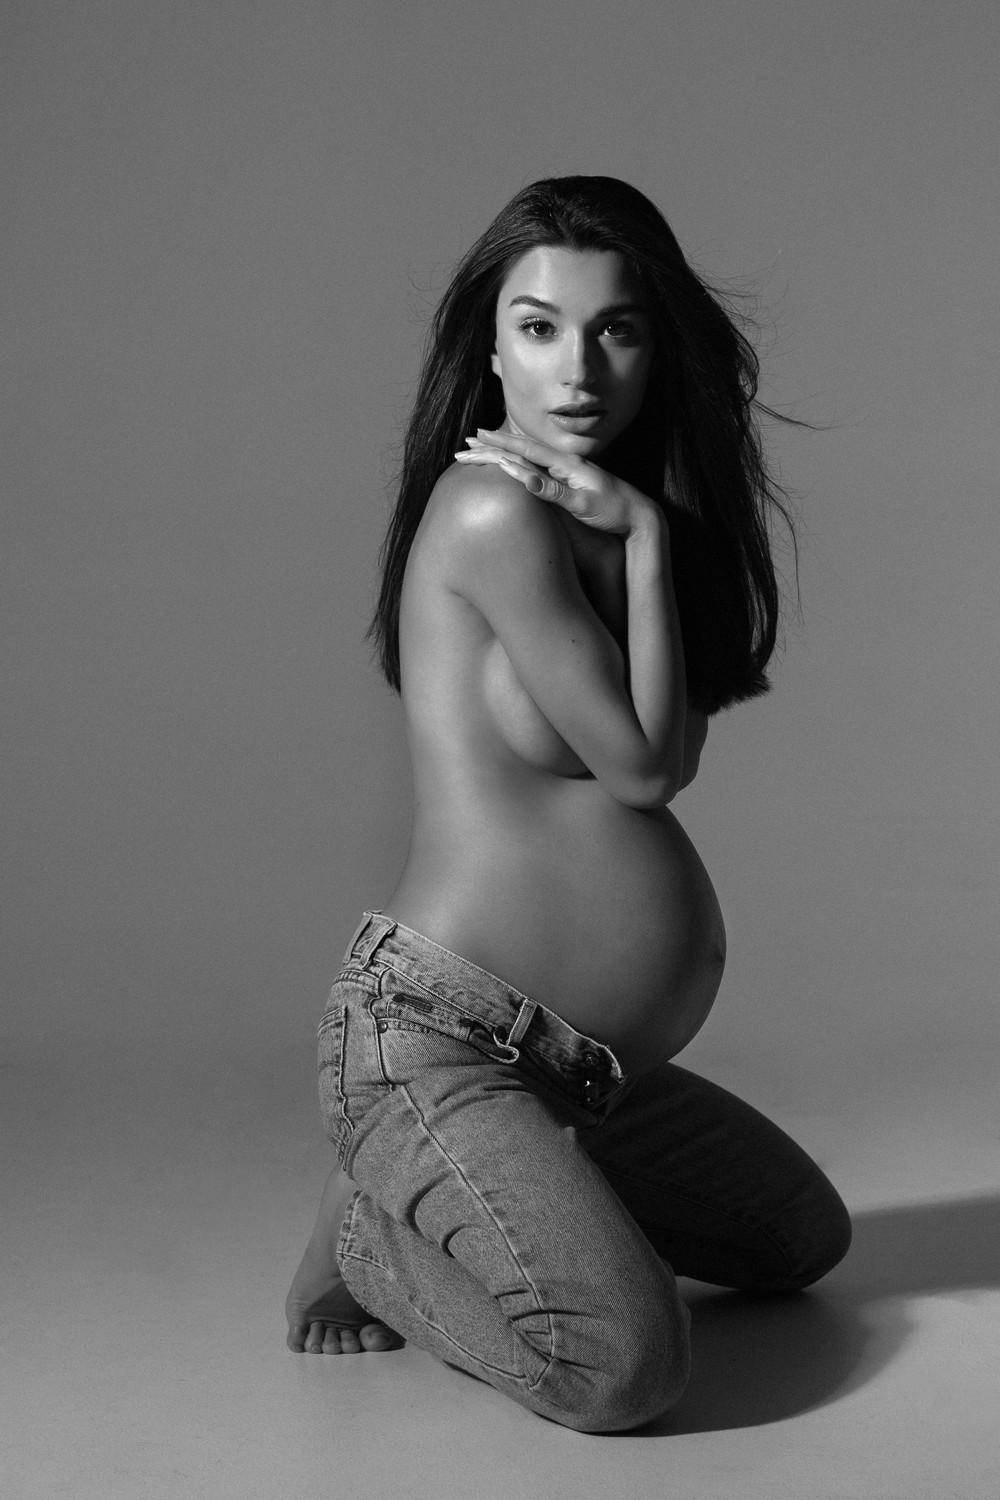 Cap-Ferrat Maternity photoshoot